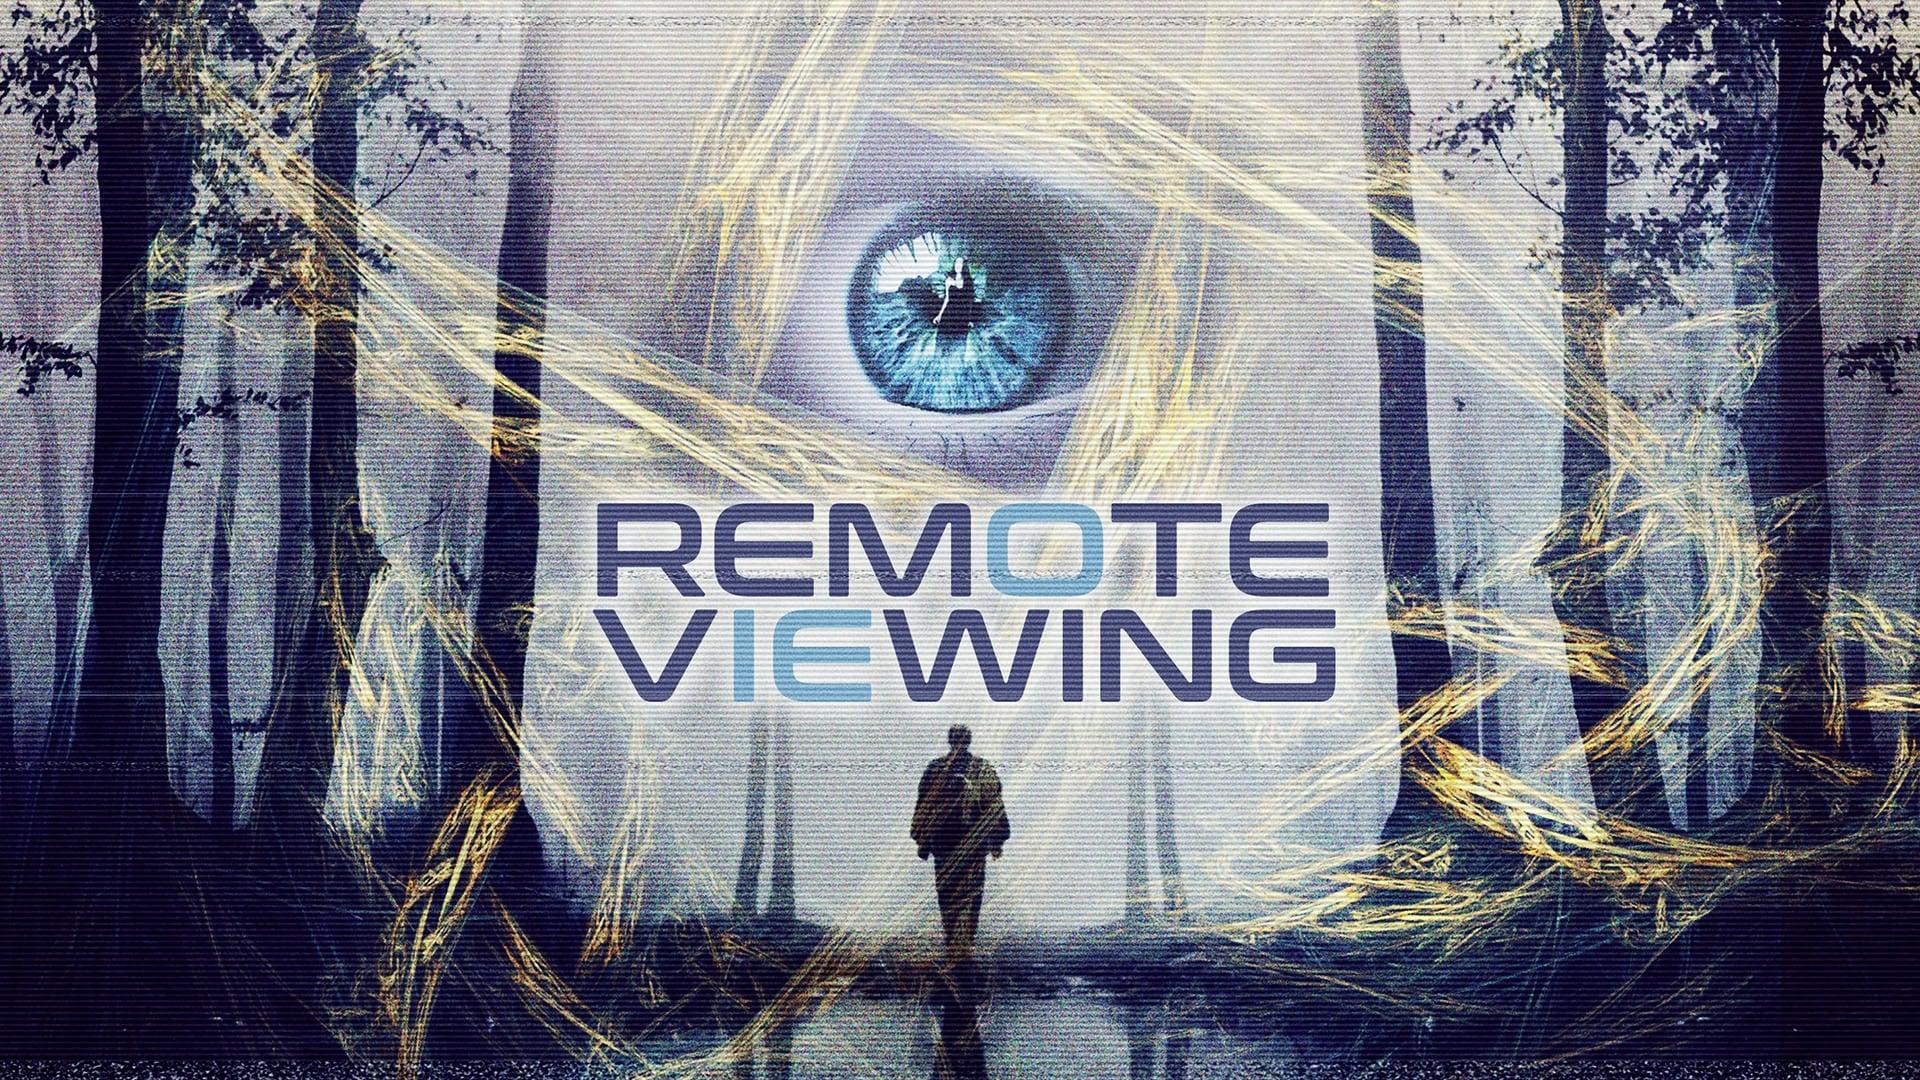 Remote Viewing backdrop